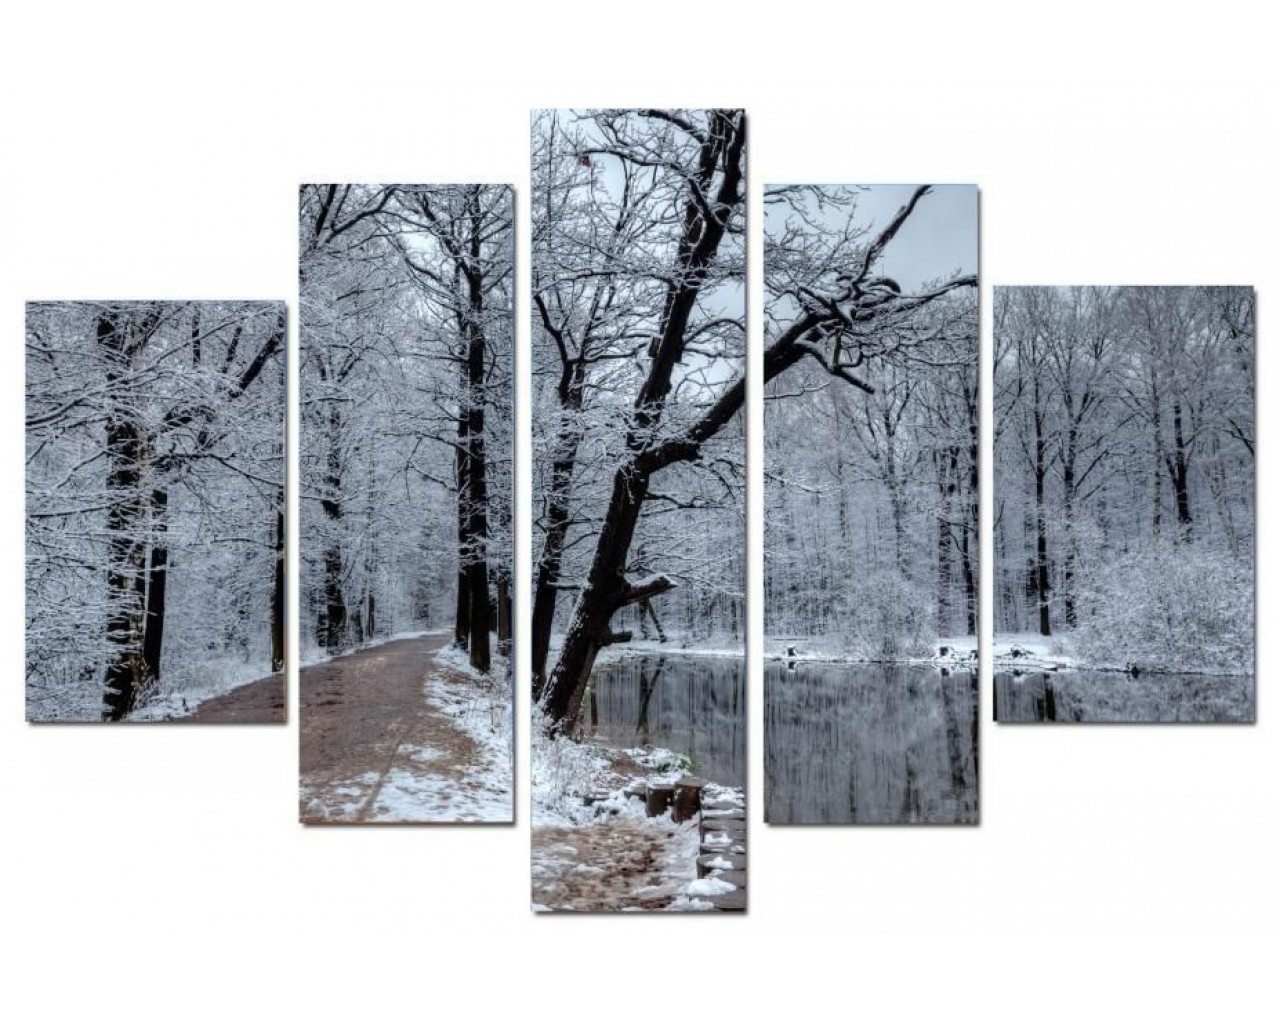 Модульная картина Зимний лес, 135х80 см.